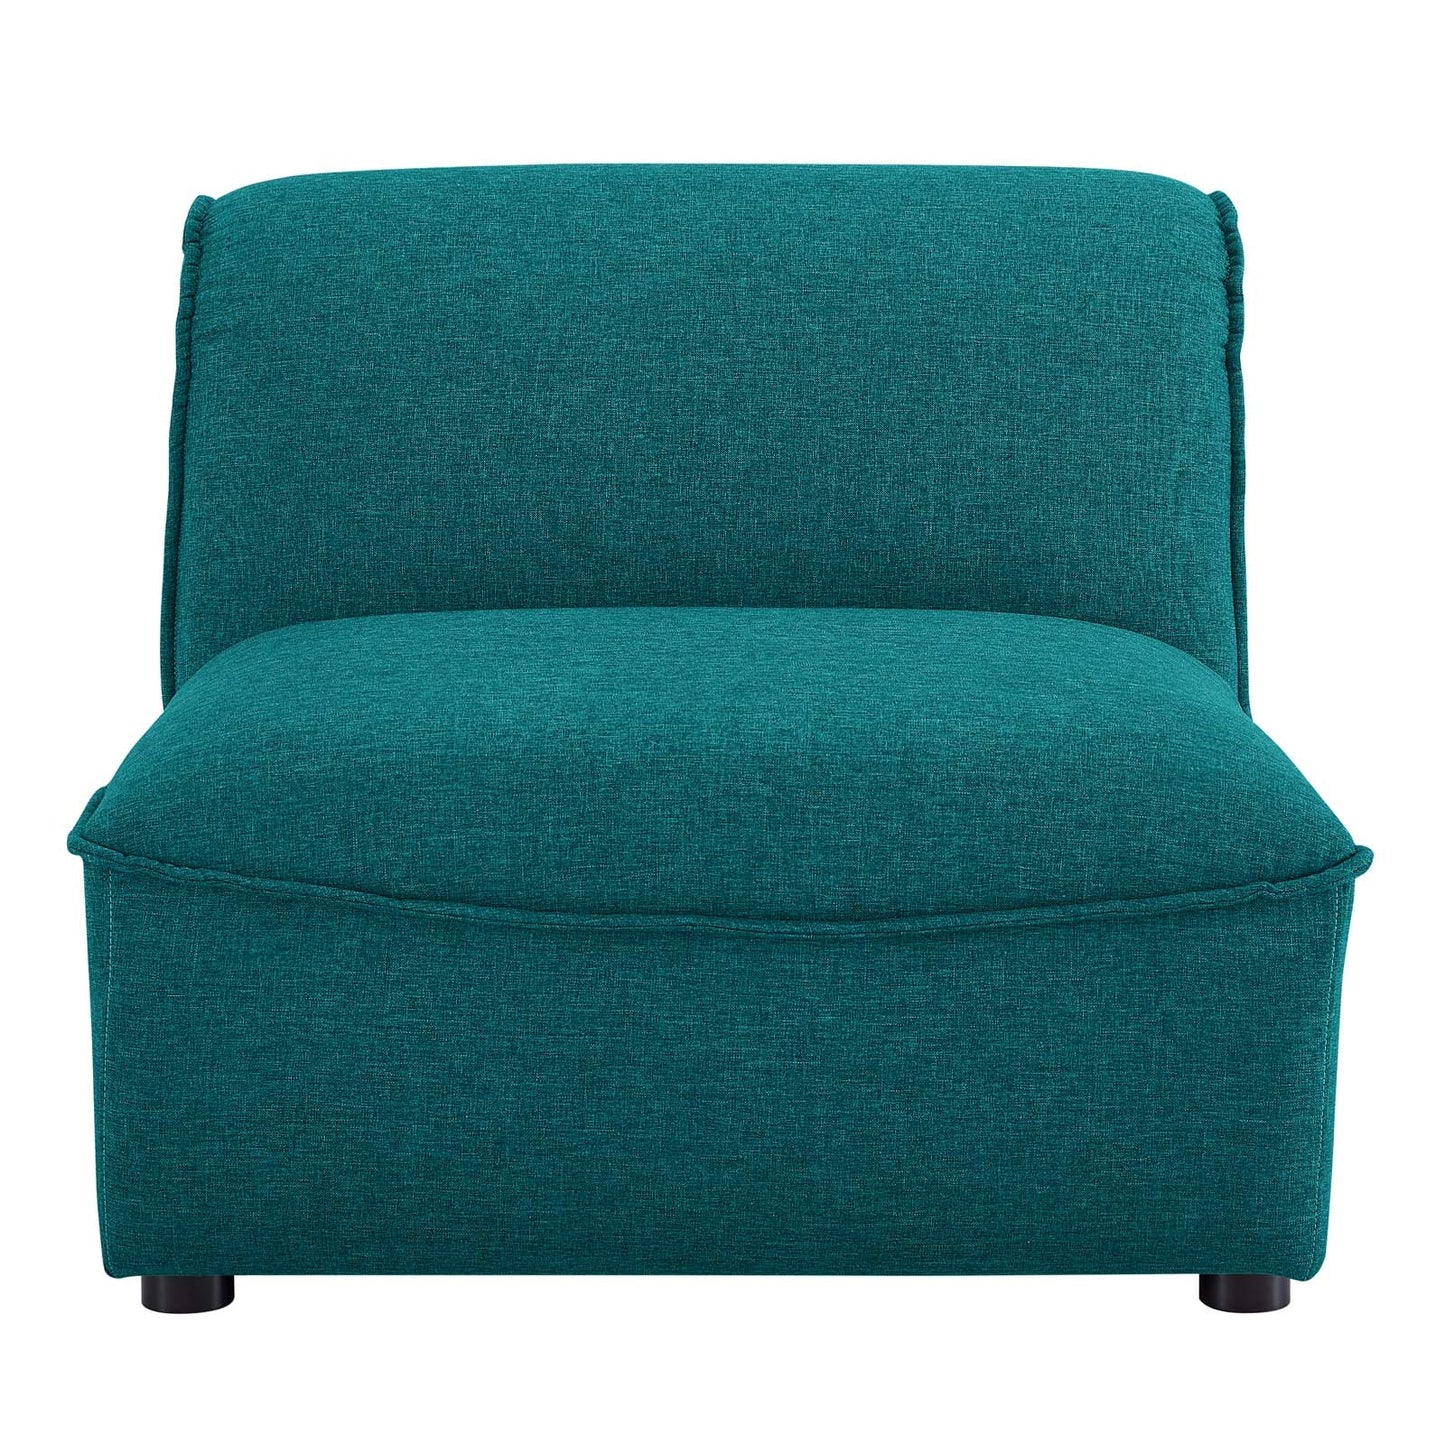 Marley Armless Chair